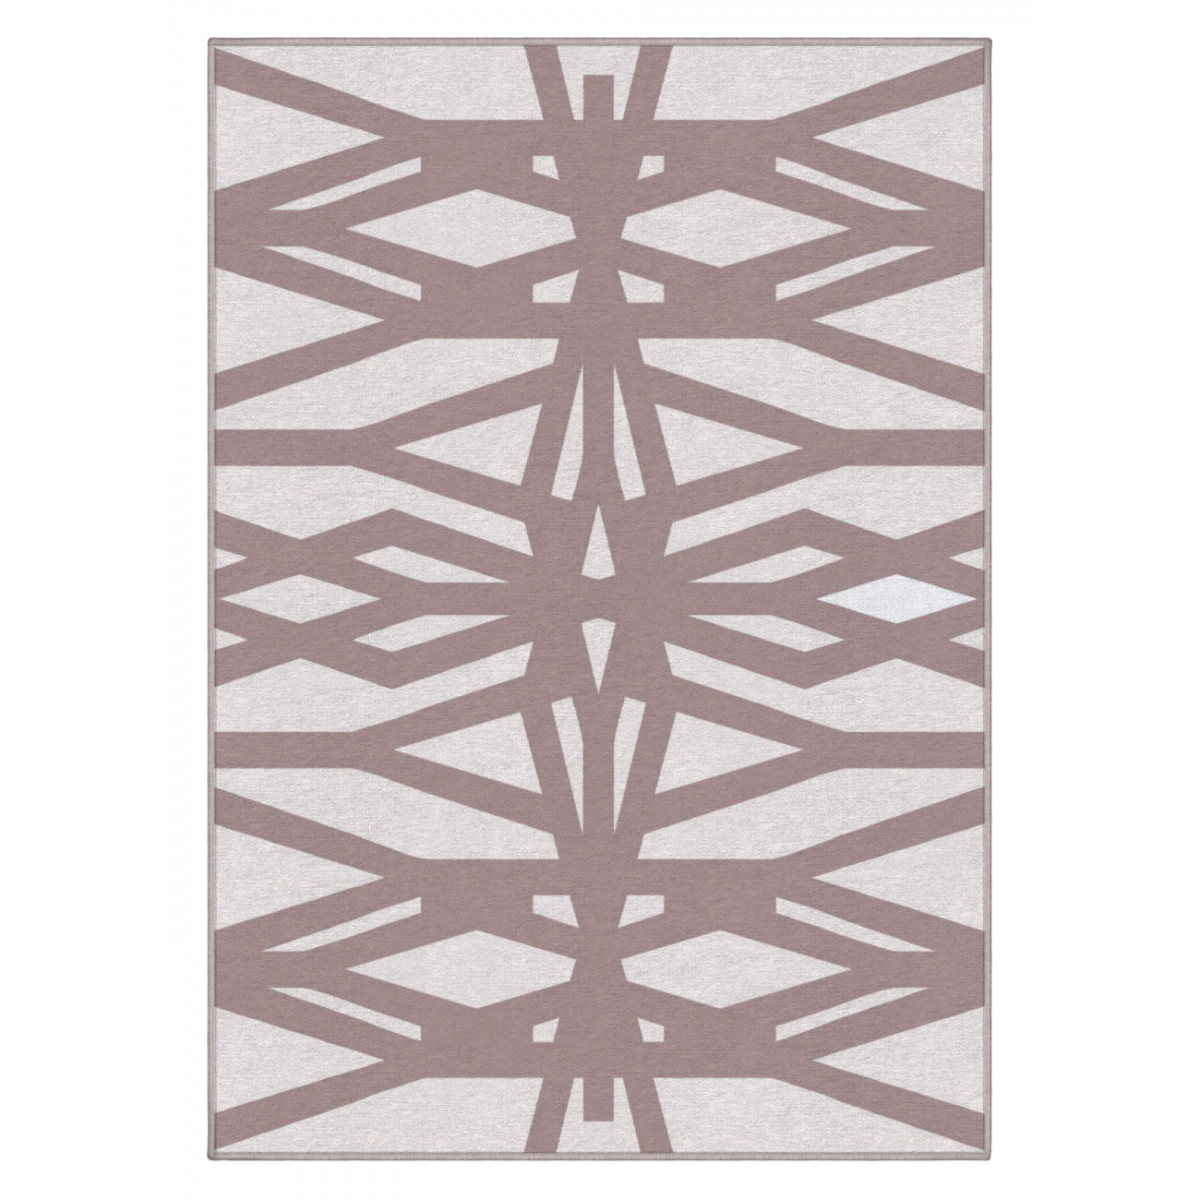 Dizajnový kusový koberec Grid od Jindřicha Lípy